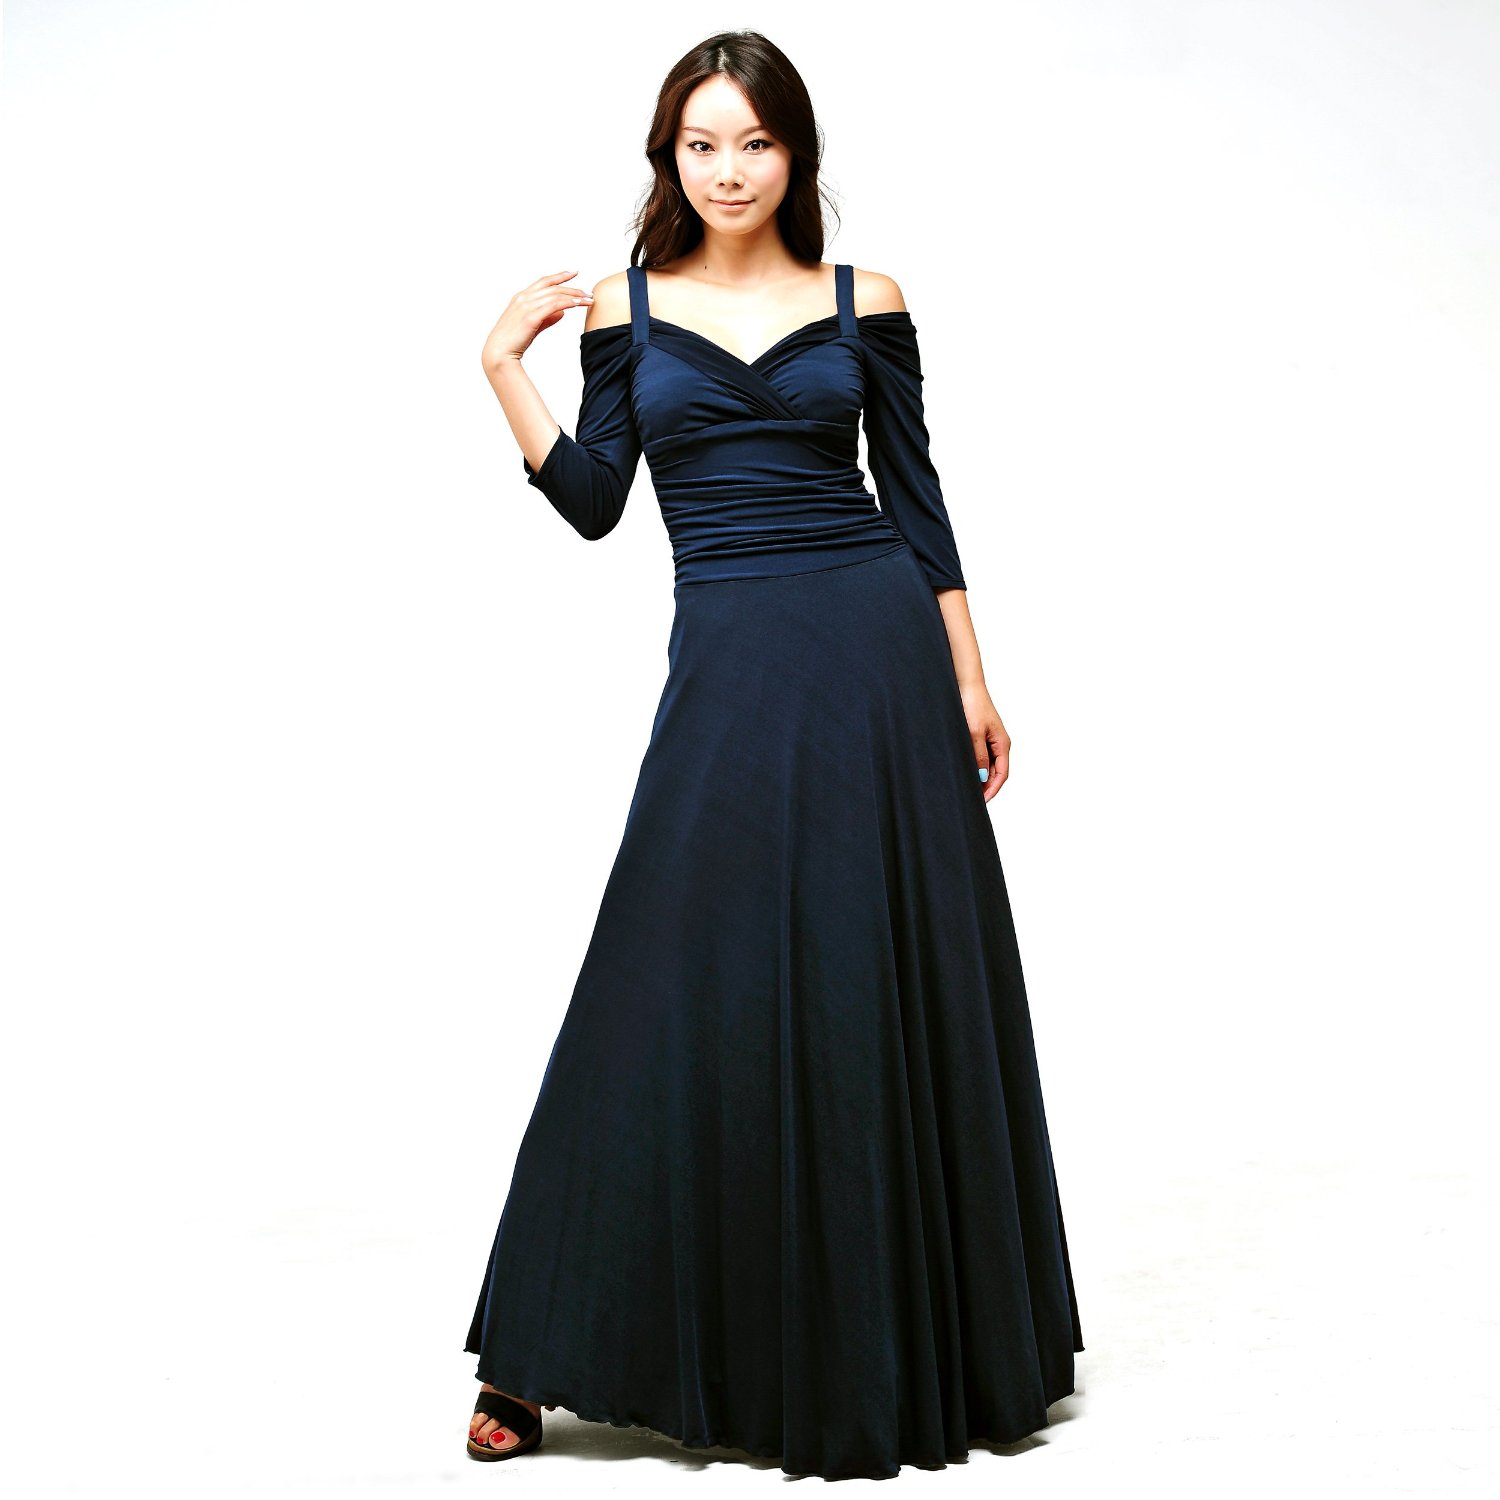 Evanese Women's Elegant Long Sleeve Evening Dresses